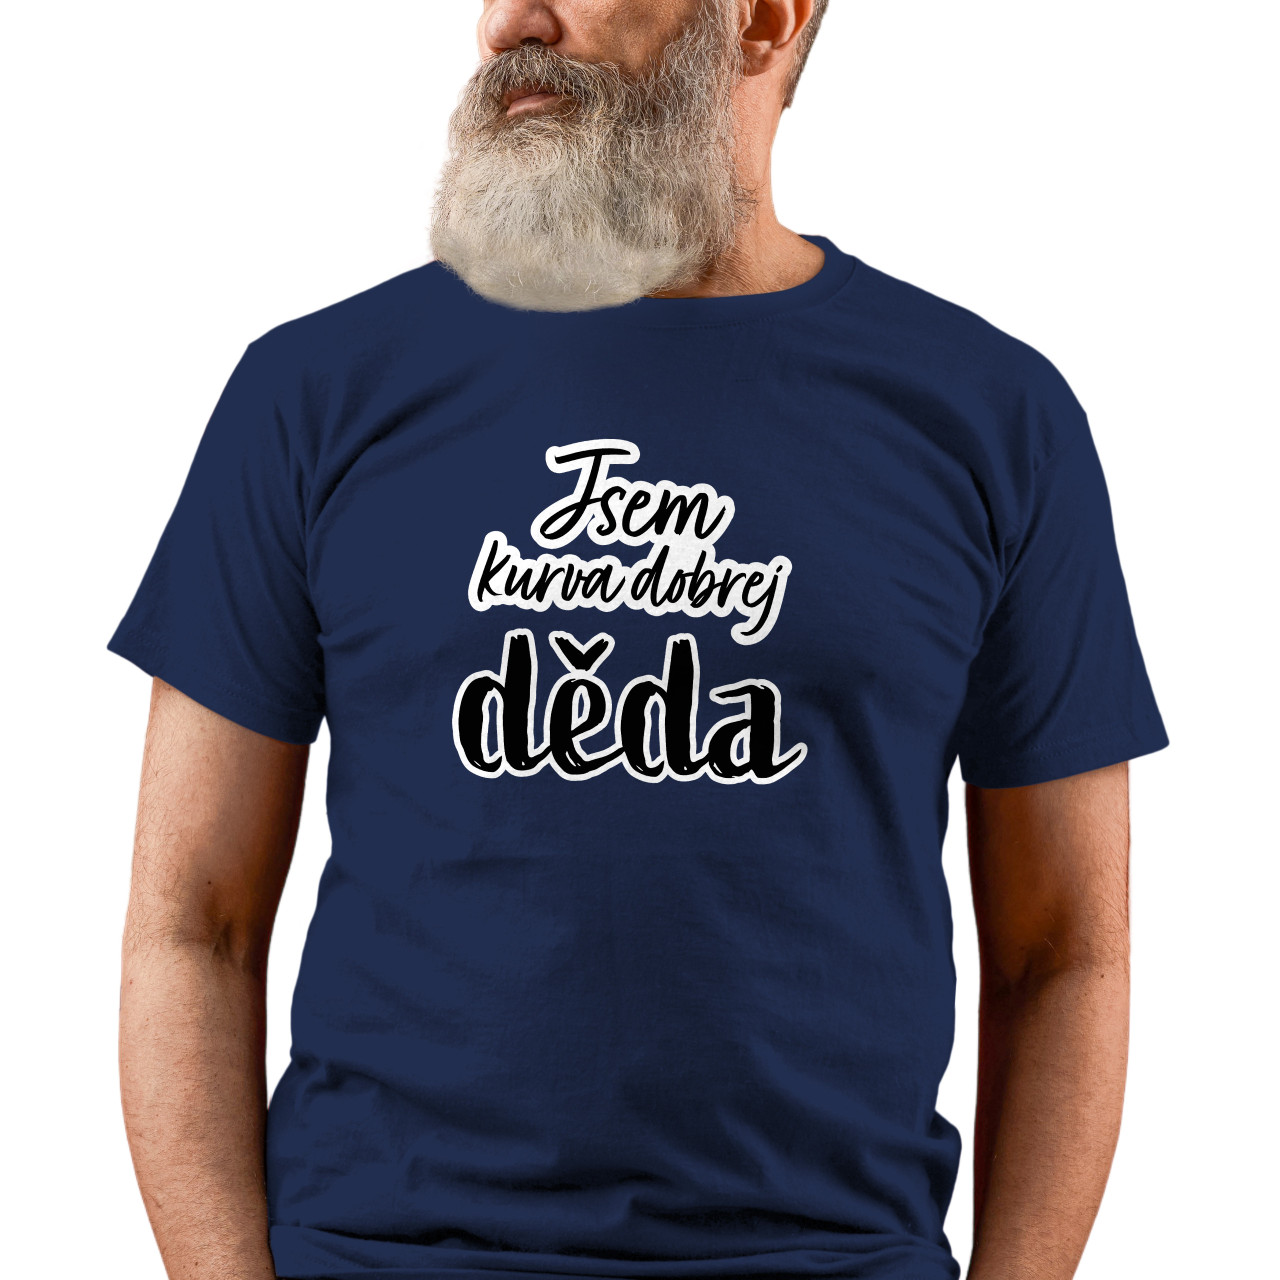 Pánské tričko s potiskem “Jsem kurva dobrej děda”